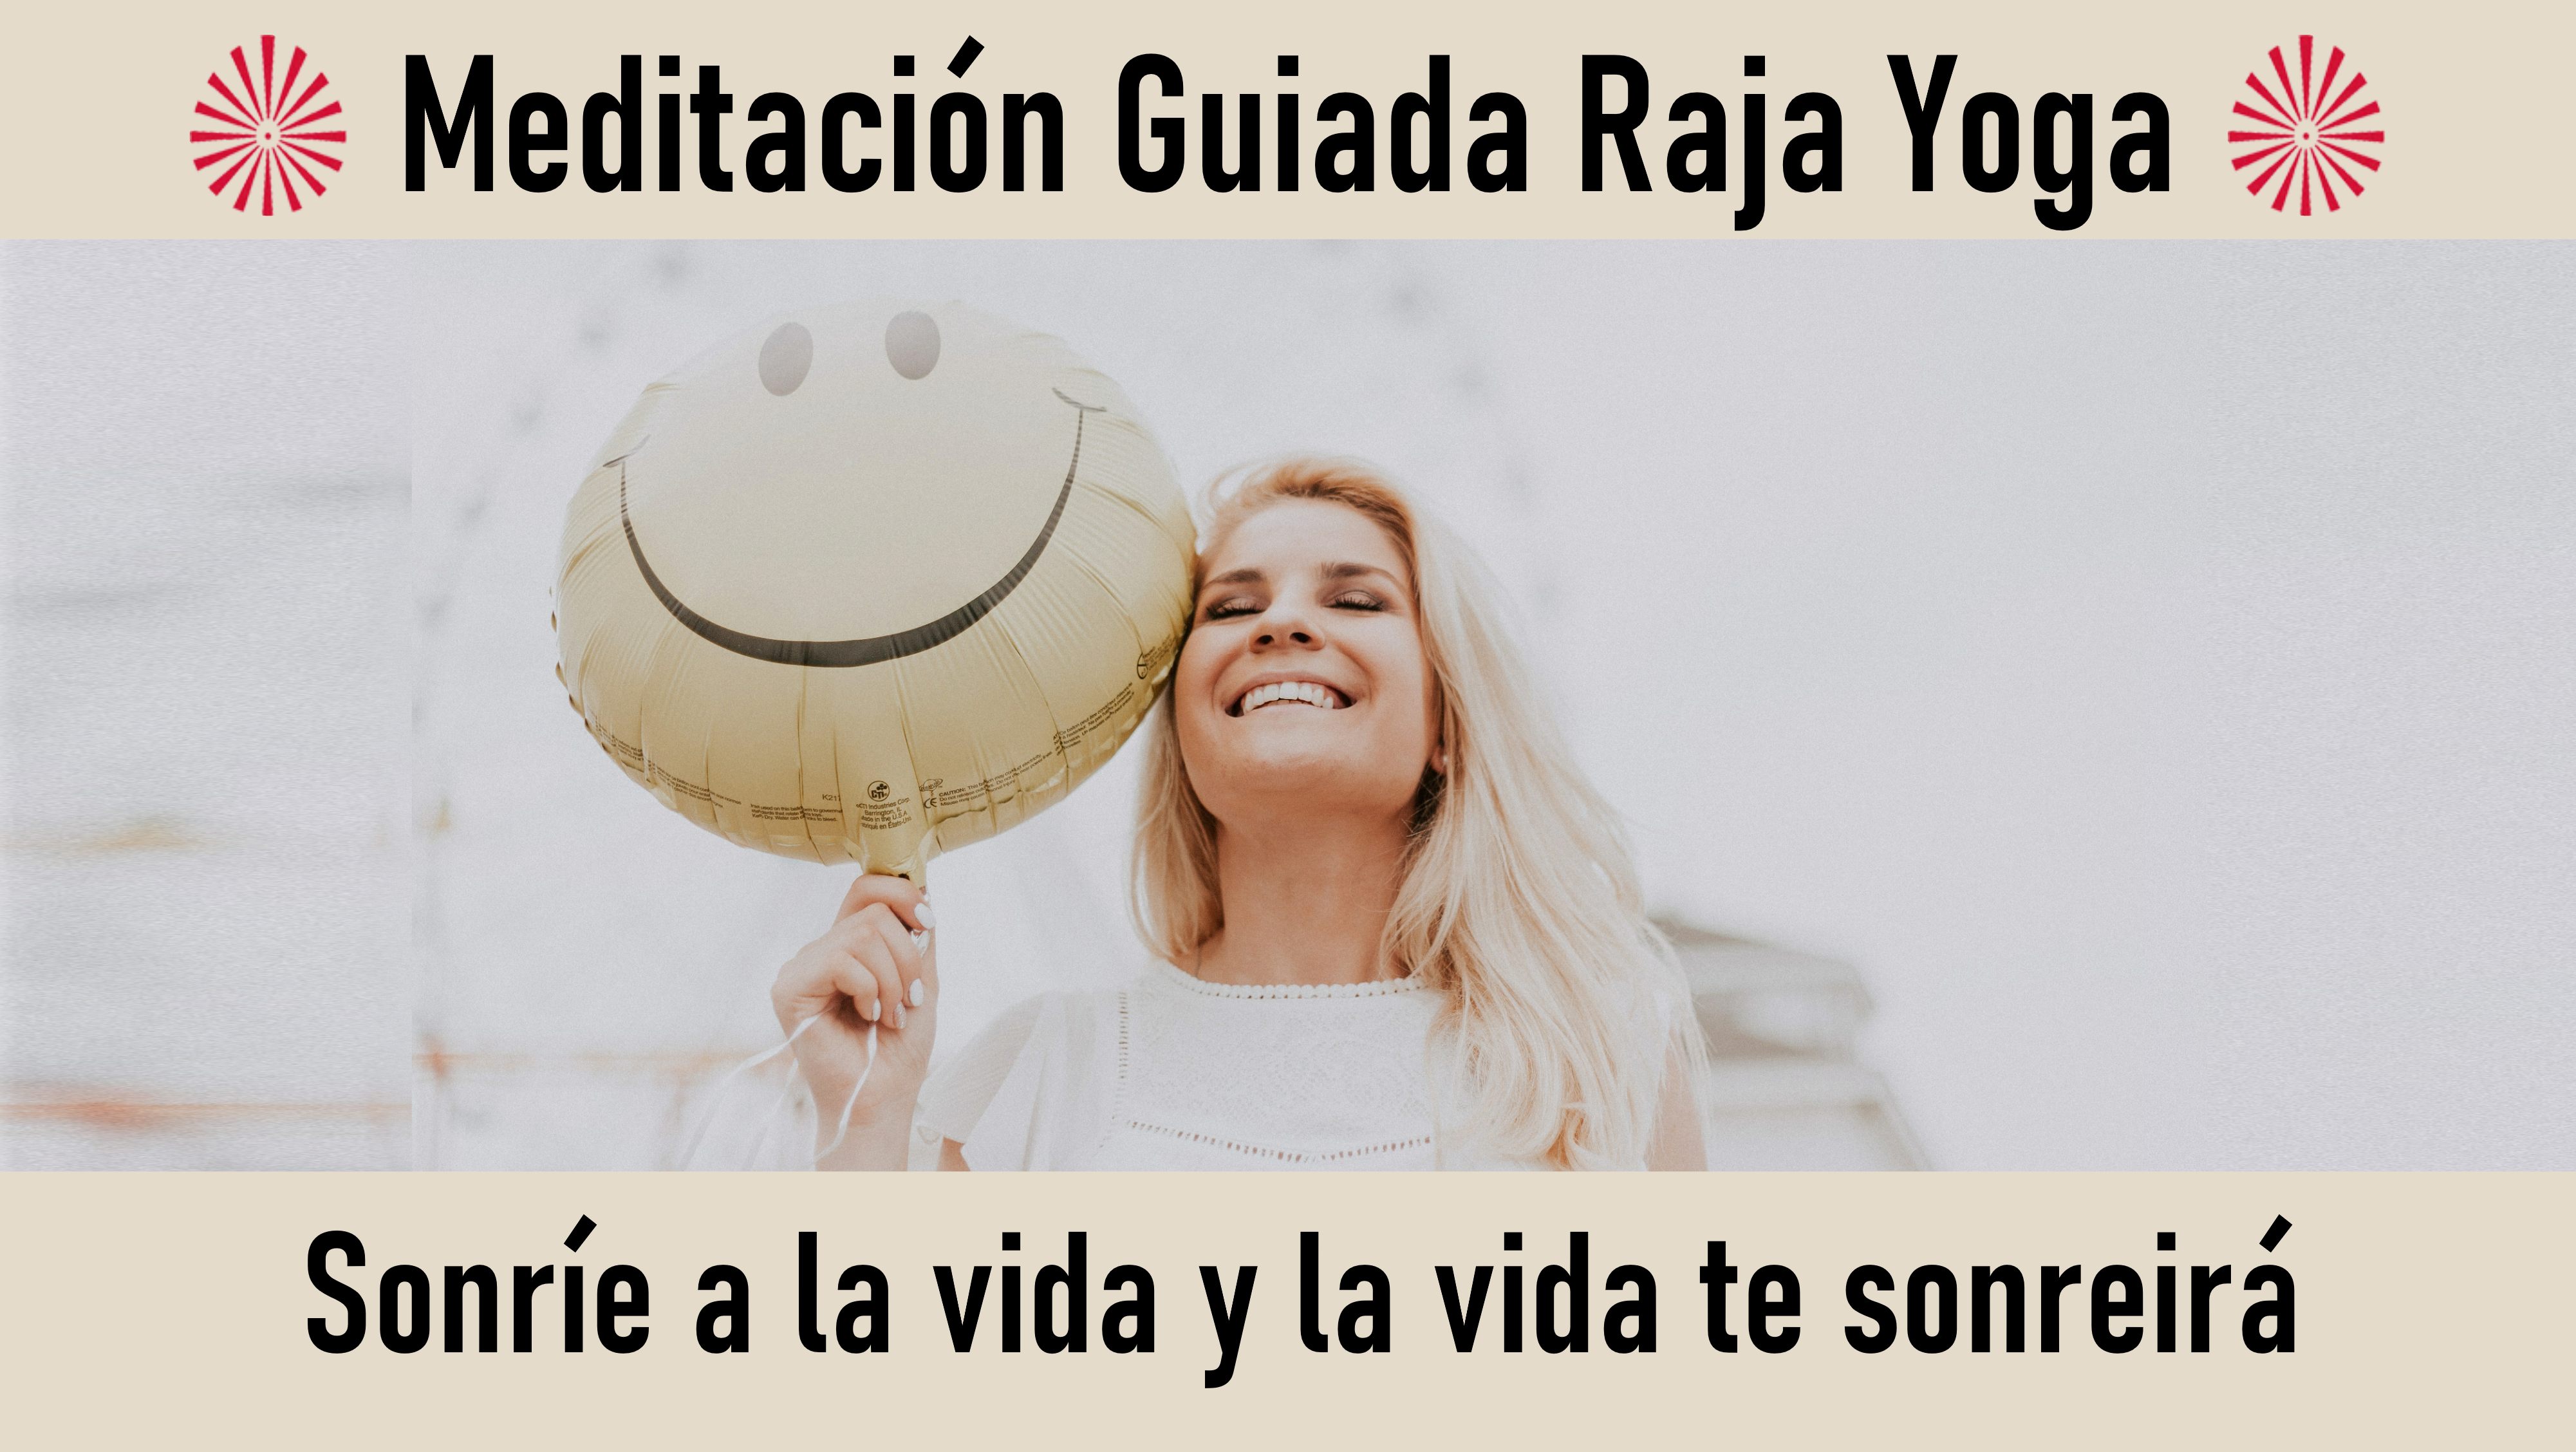 25 Octubre 2020  Meditación guiada: Sonríe a la vida y la vida te sonreirá